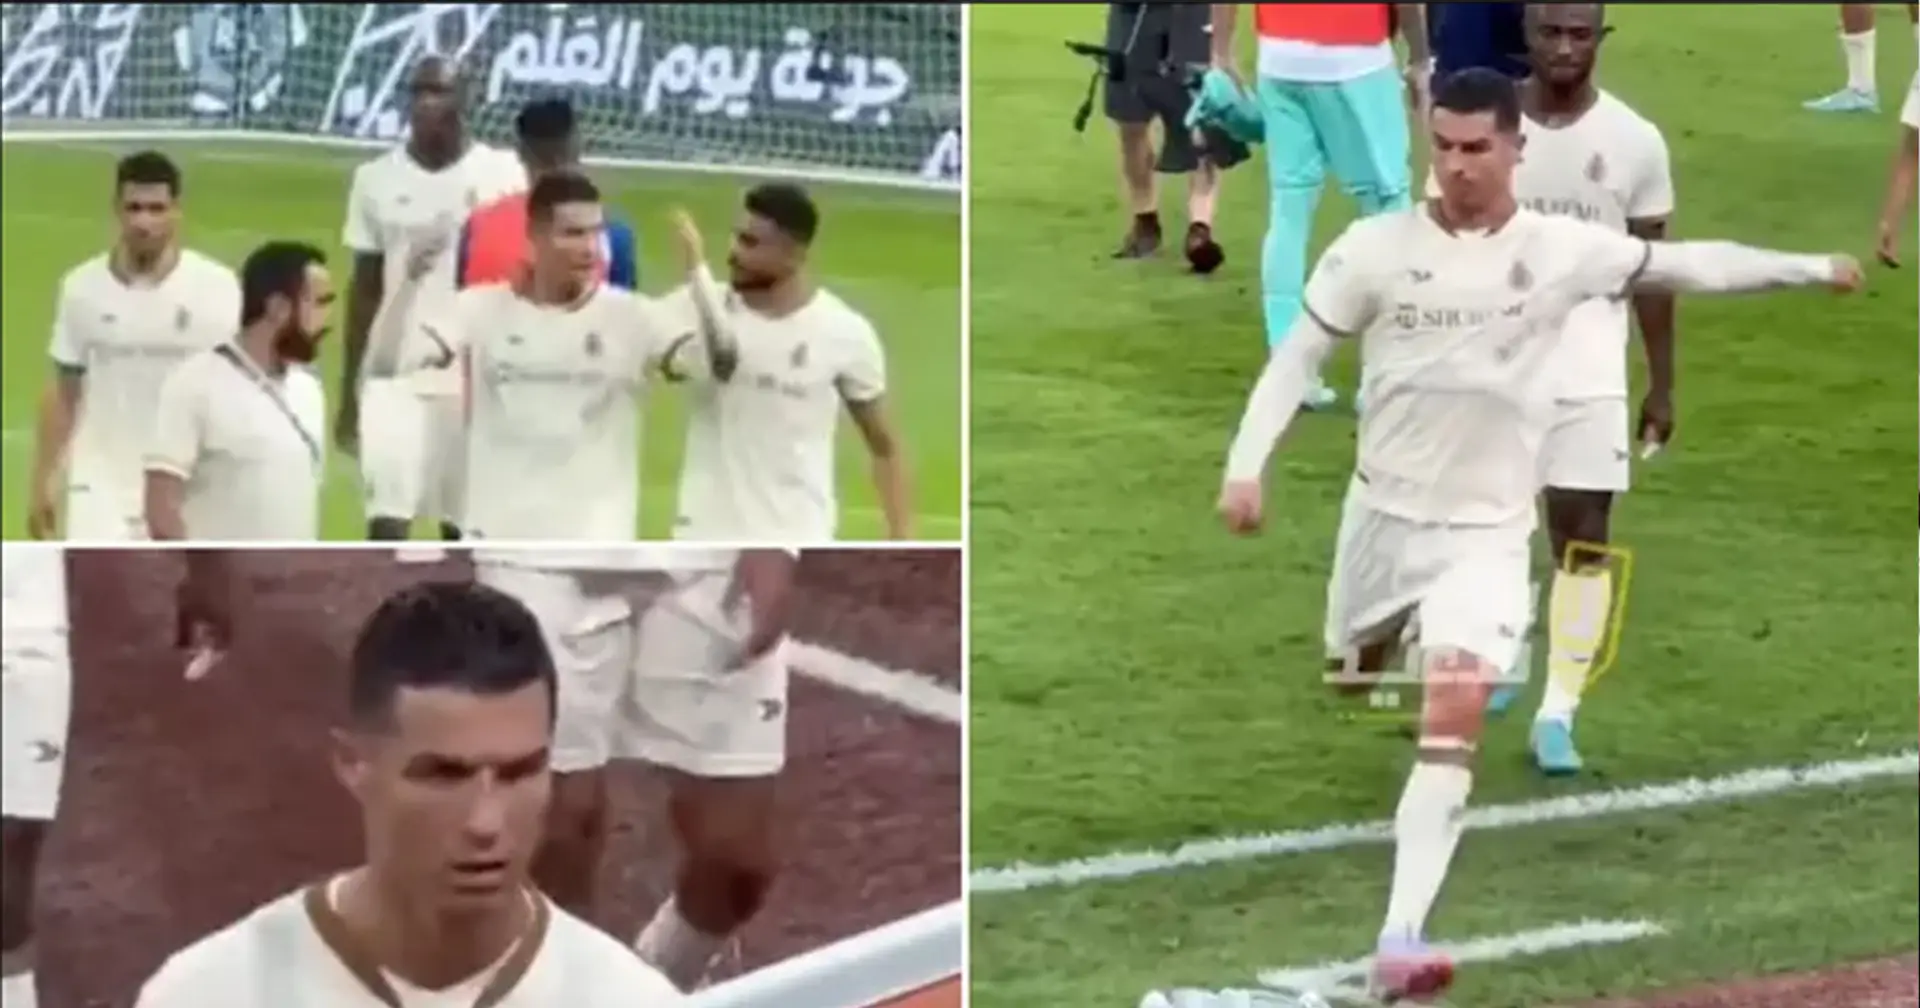 Ronaldos Verein hat die Führung in der Meisterschaft verloren. Der Portugiese reagierte darauf so emotional, dass er auf dem Spielfeld gegen Flaschen trat 😱